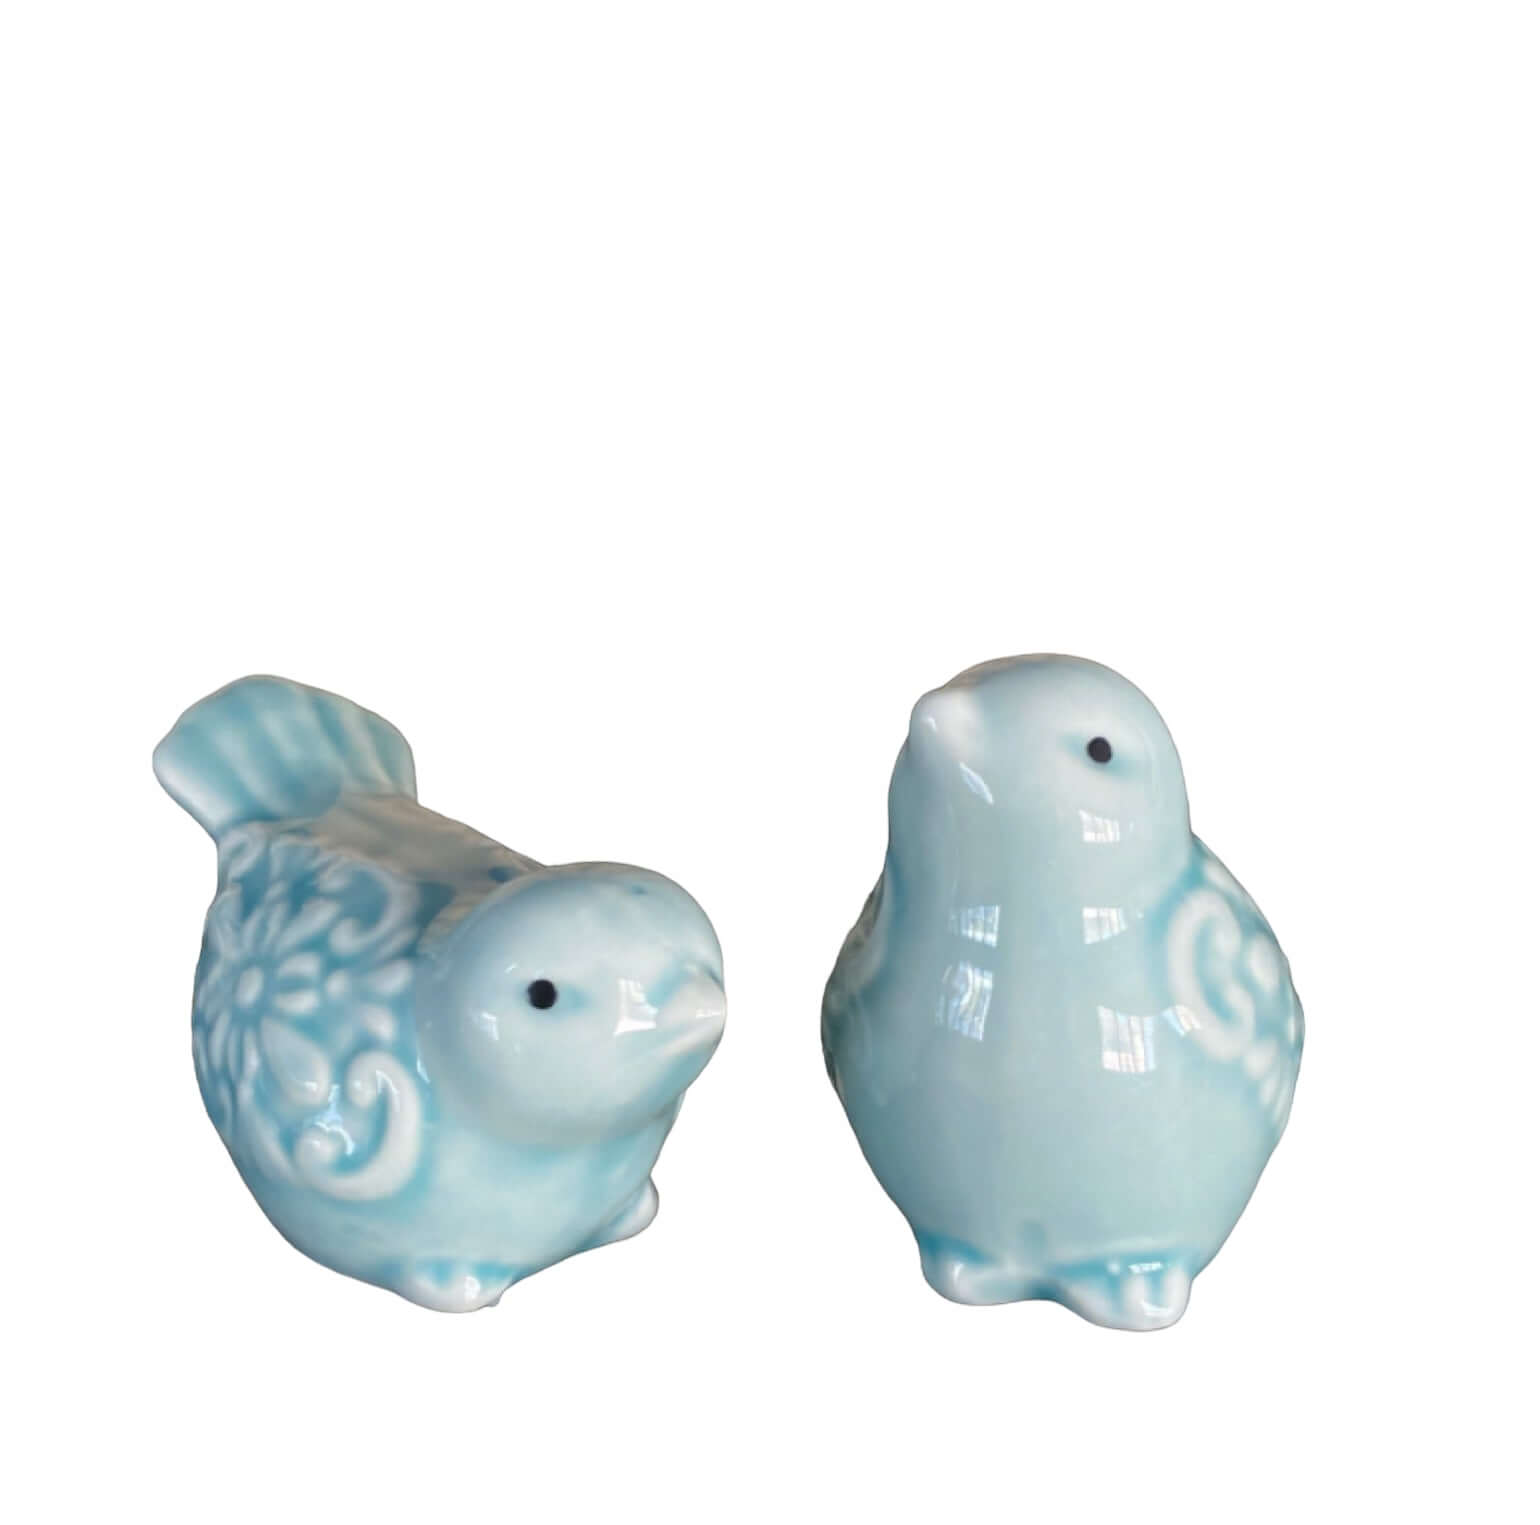 Bird Birds Light Blue Décor Set Of 2 - The Renmy Store Homewares & Gifts 